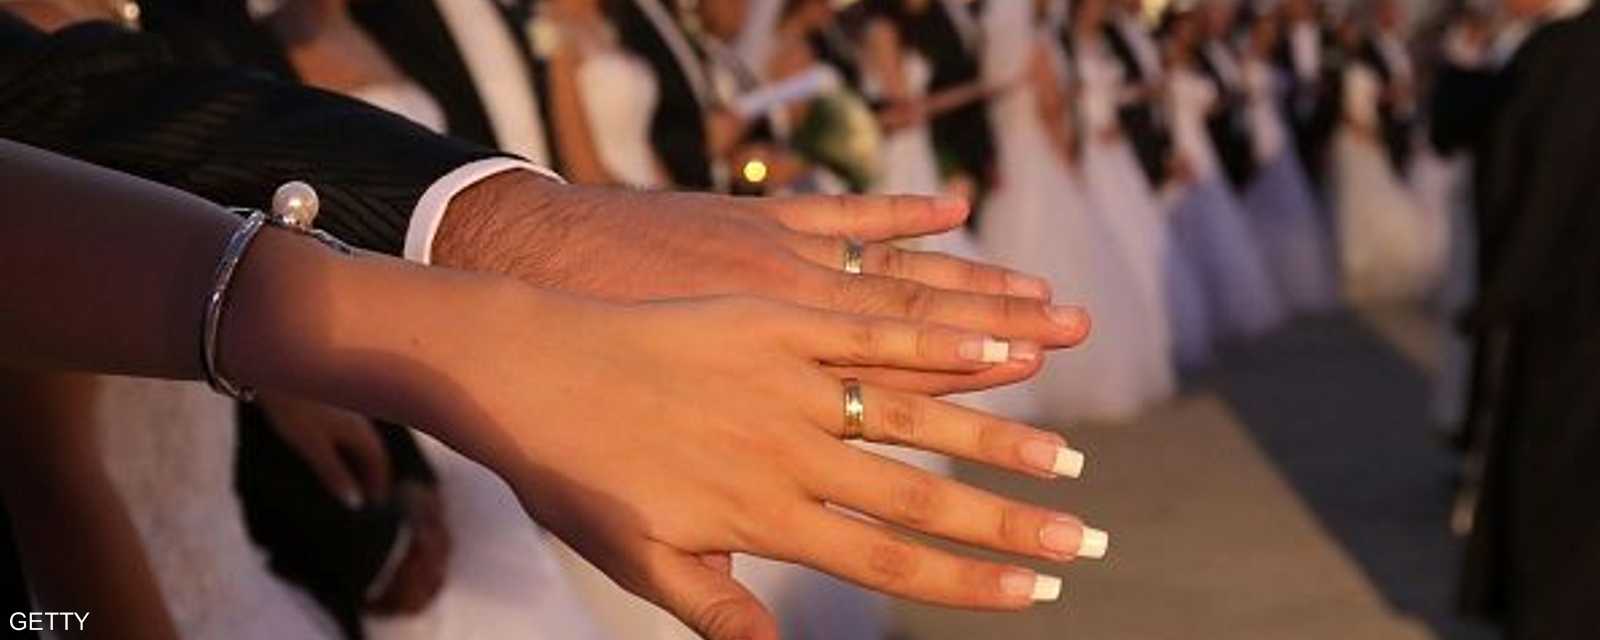 عروس تشهر خاتم الزواج مع يد عريسها